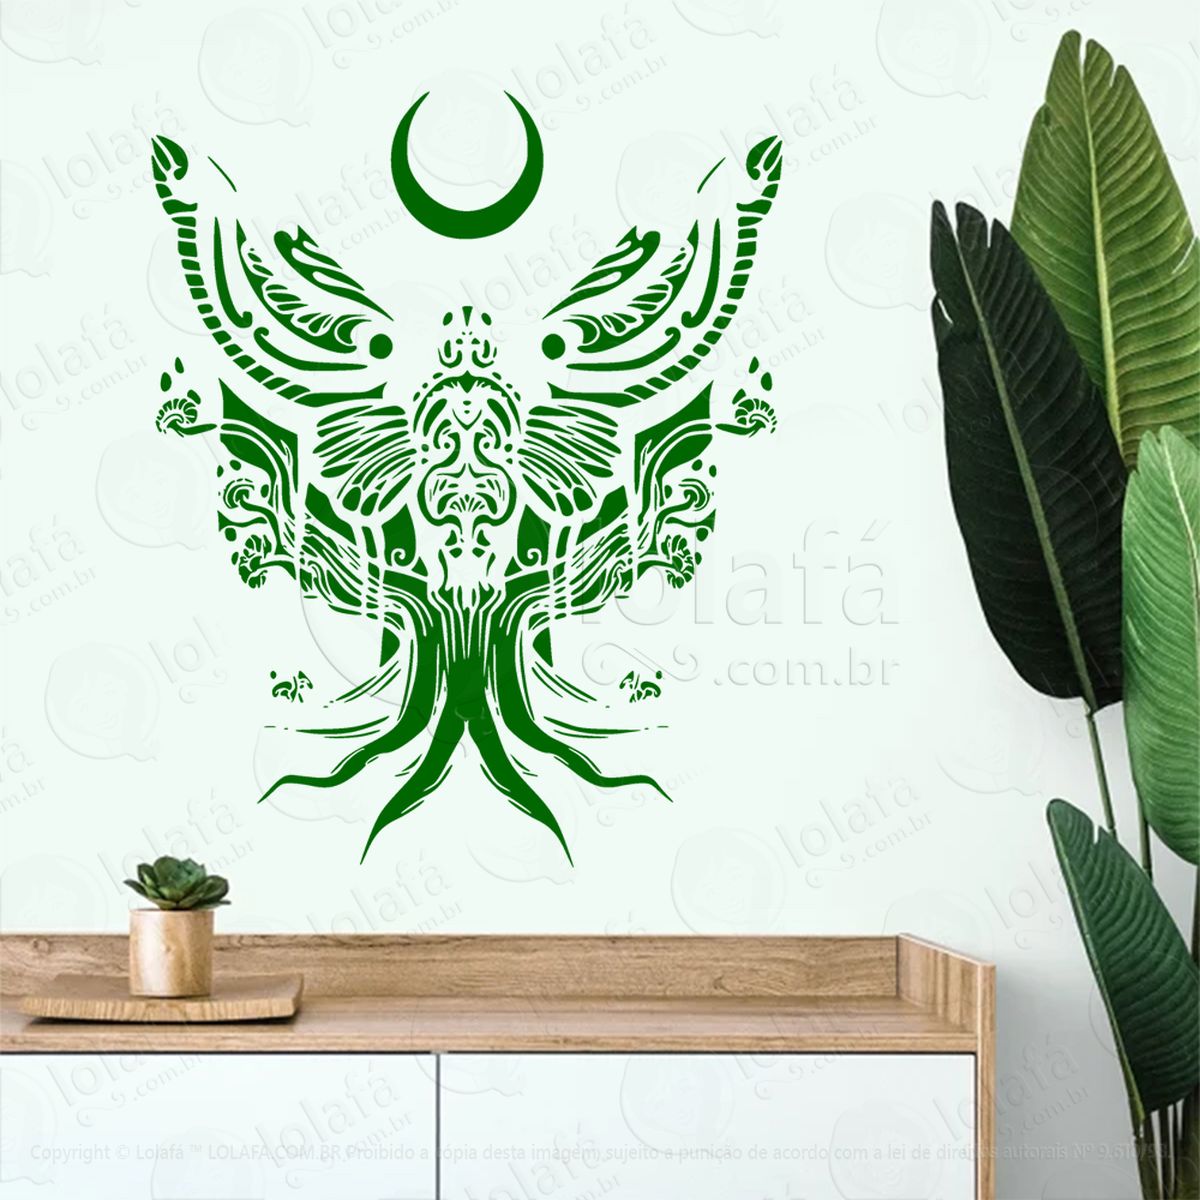 traça de Árvore tree moth adesivo de parede decorativo para casa, sala, quarto, vidro e altar ocultista - mod:68